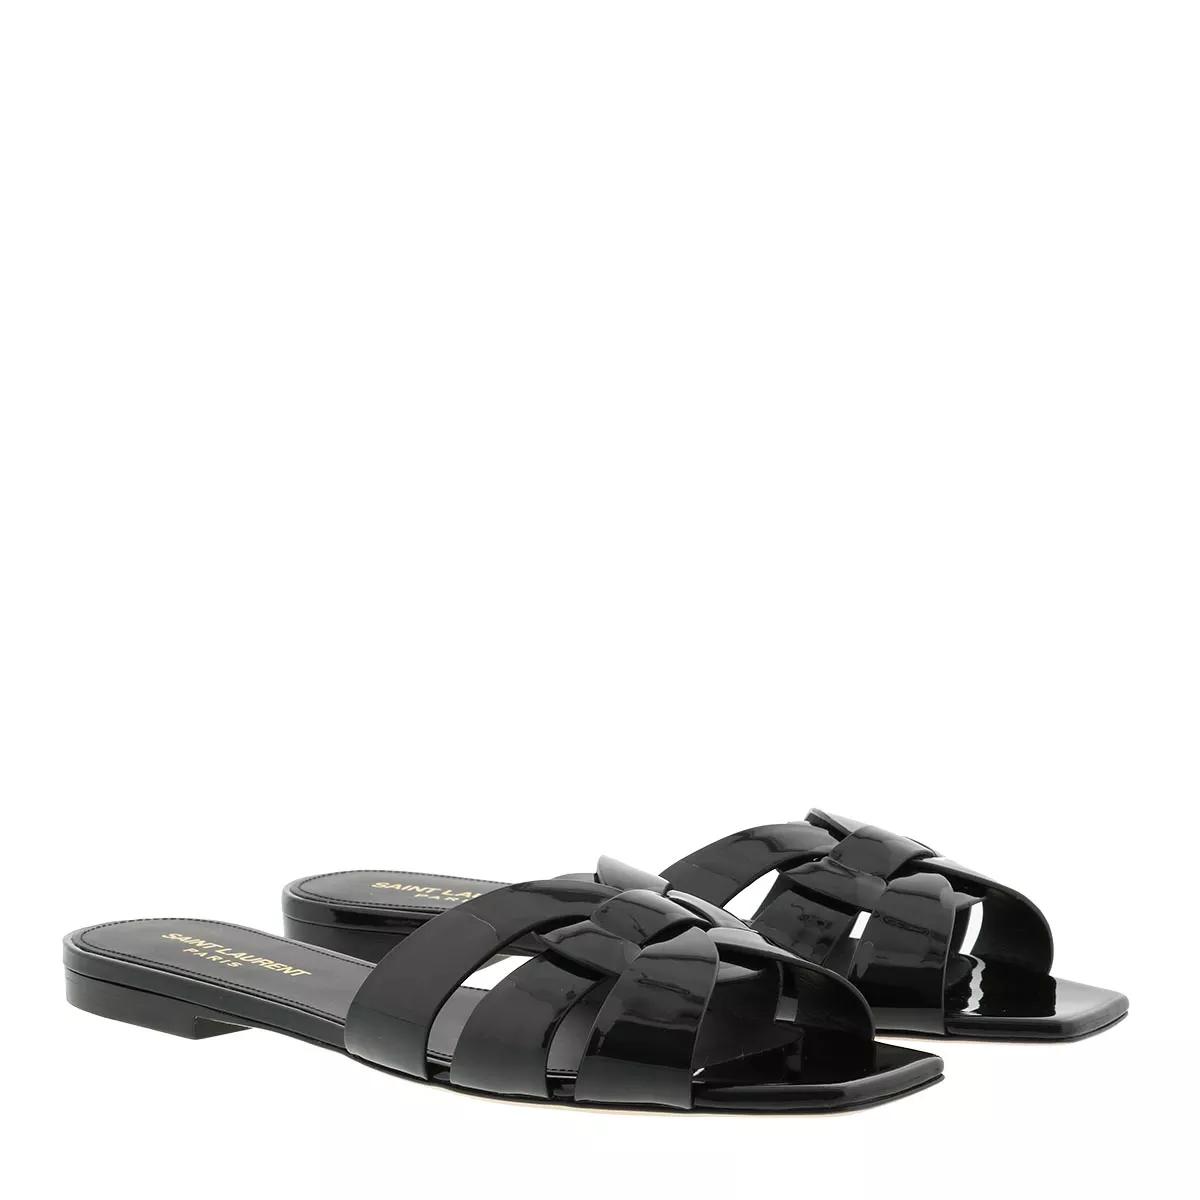 Nu Pieds Slide Sandals Shiny Leather Black Slide